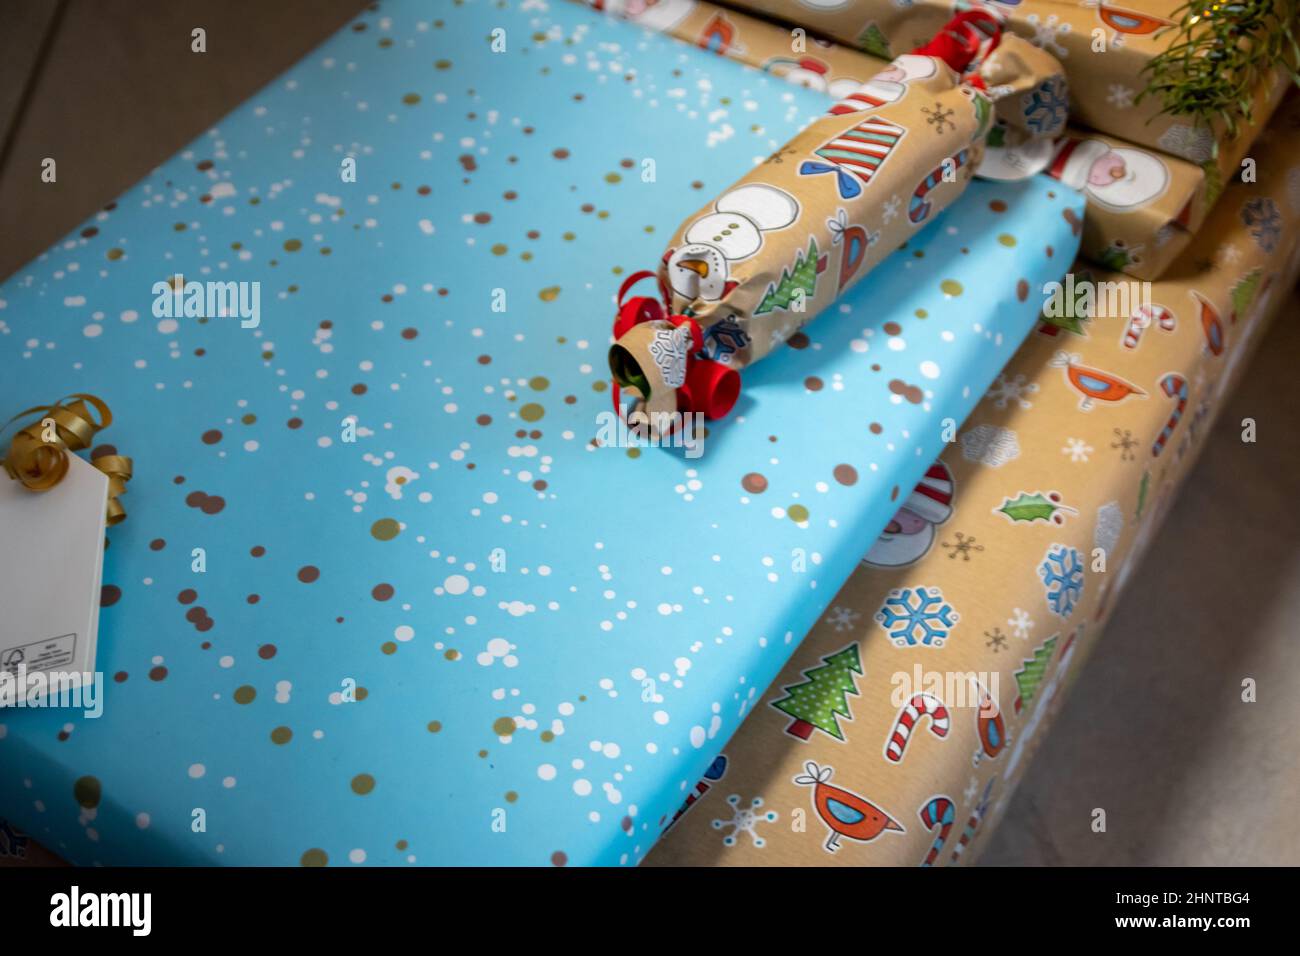 Festliche eingewickelte Weihnachtsgeschenke und Weihnachtsgeschenke unter dem Weihnachtsbaum zeigt dekorative Unboxing-Veranstaltung mit traditionellen Feier der handgefertigten Wintersaison für funkelnde Kinder Augen Schönheit Stockfoto